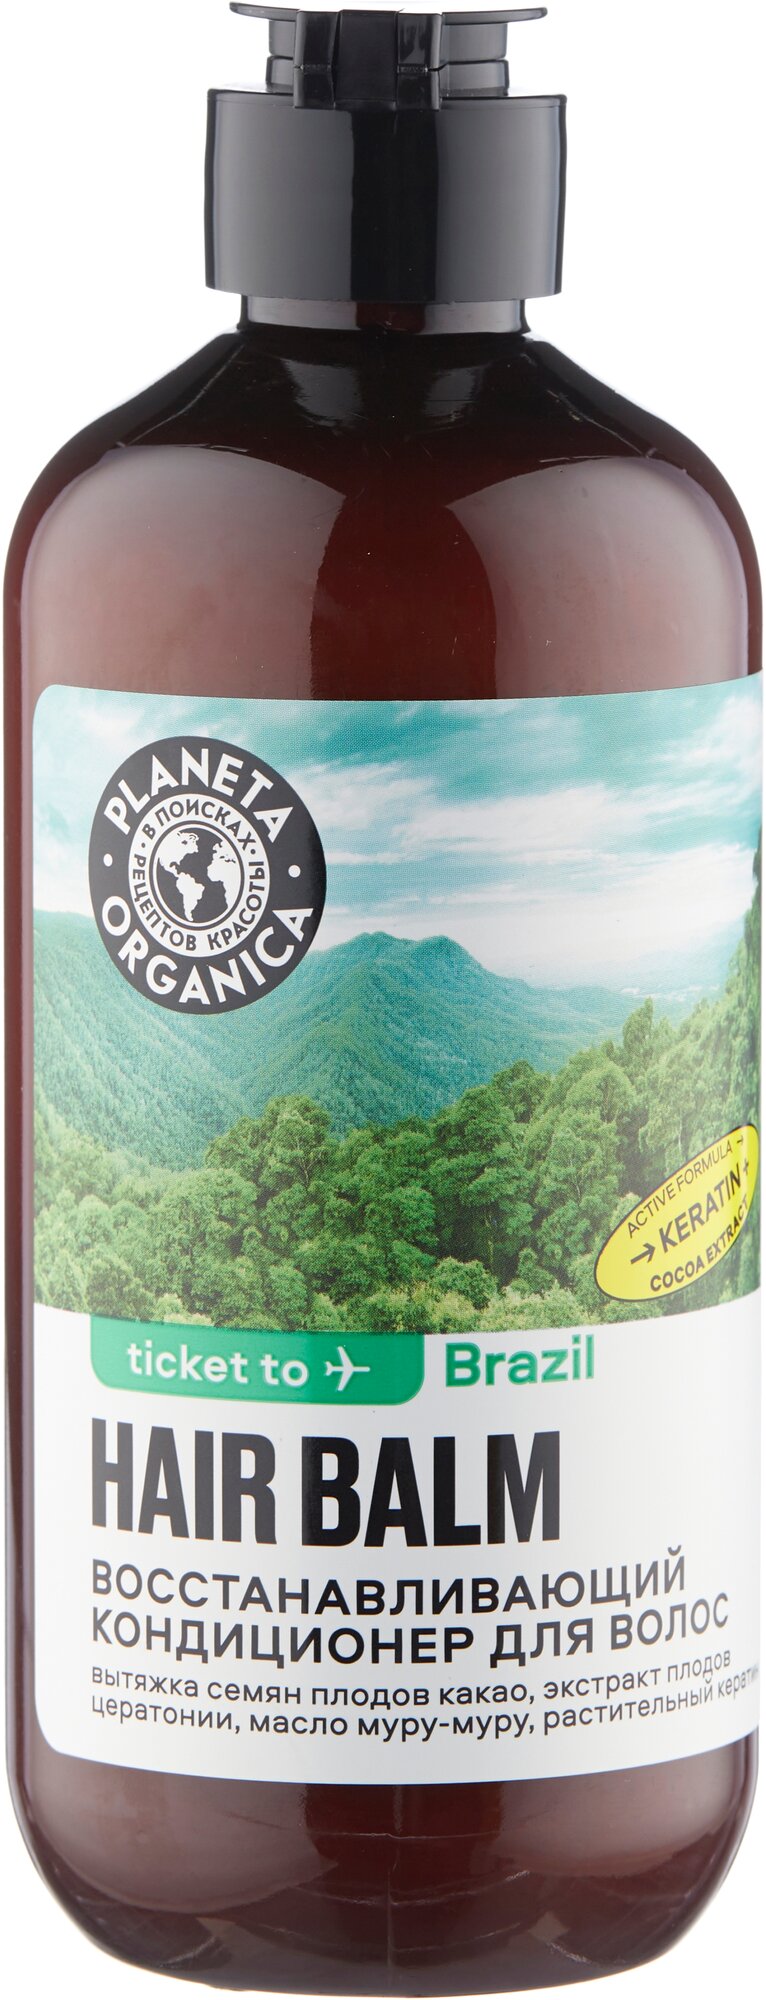 Кондиционер для волос Planeta Organica Ticket to Brazil Восстанавливающий, 400 мл - фото №11